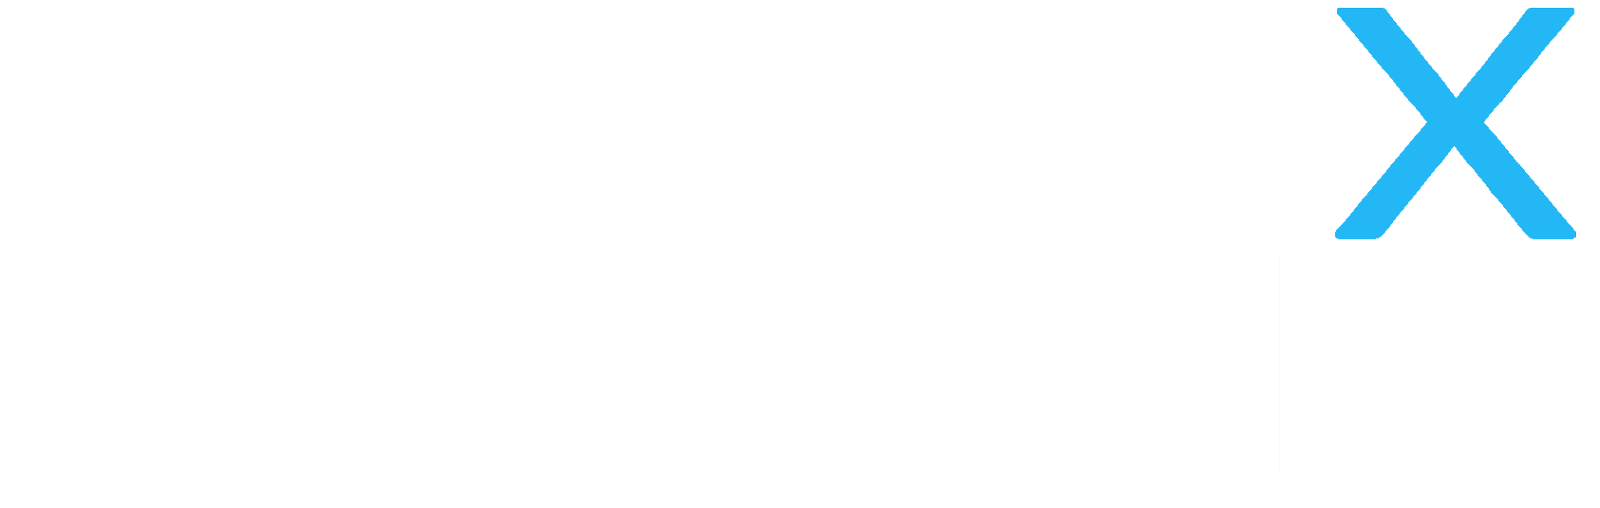 AuthX